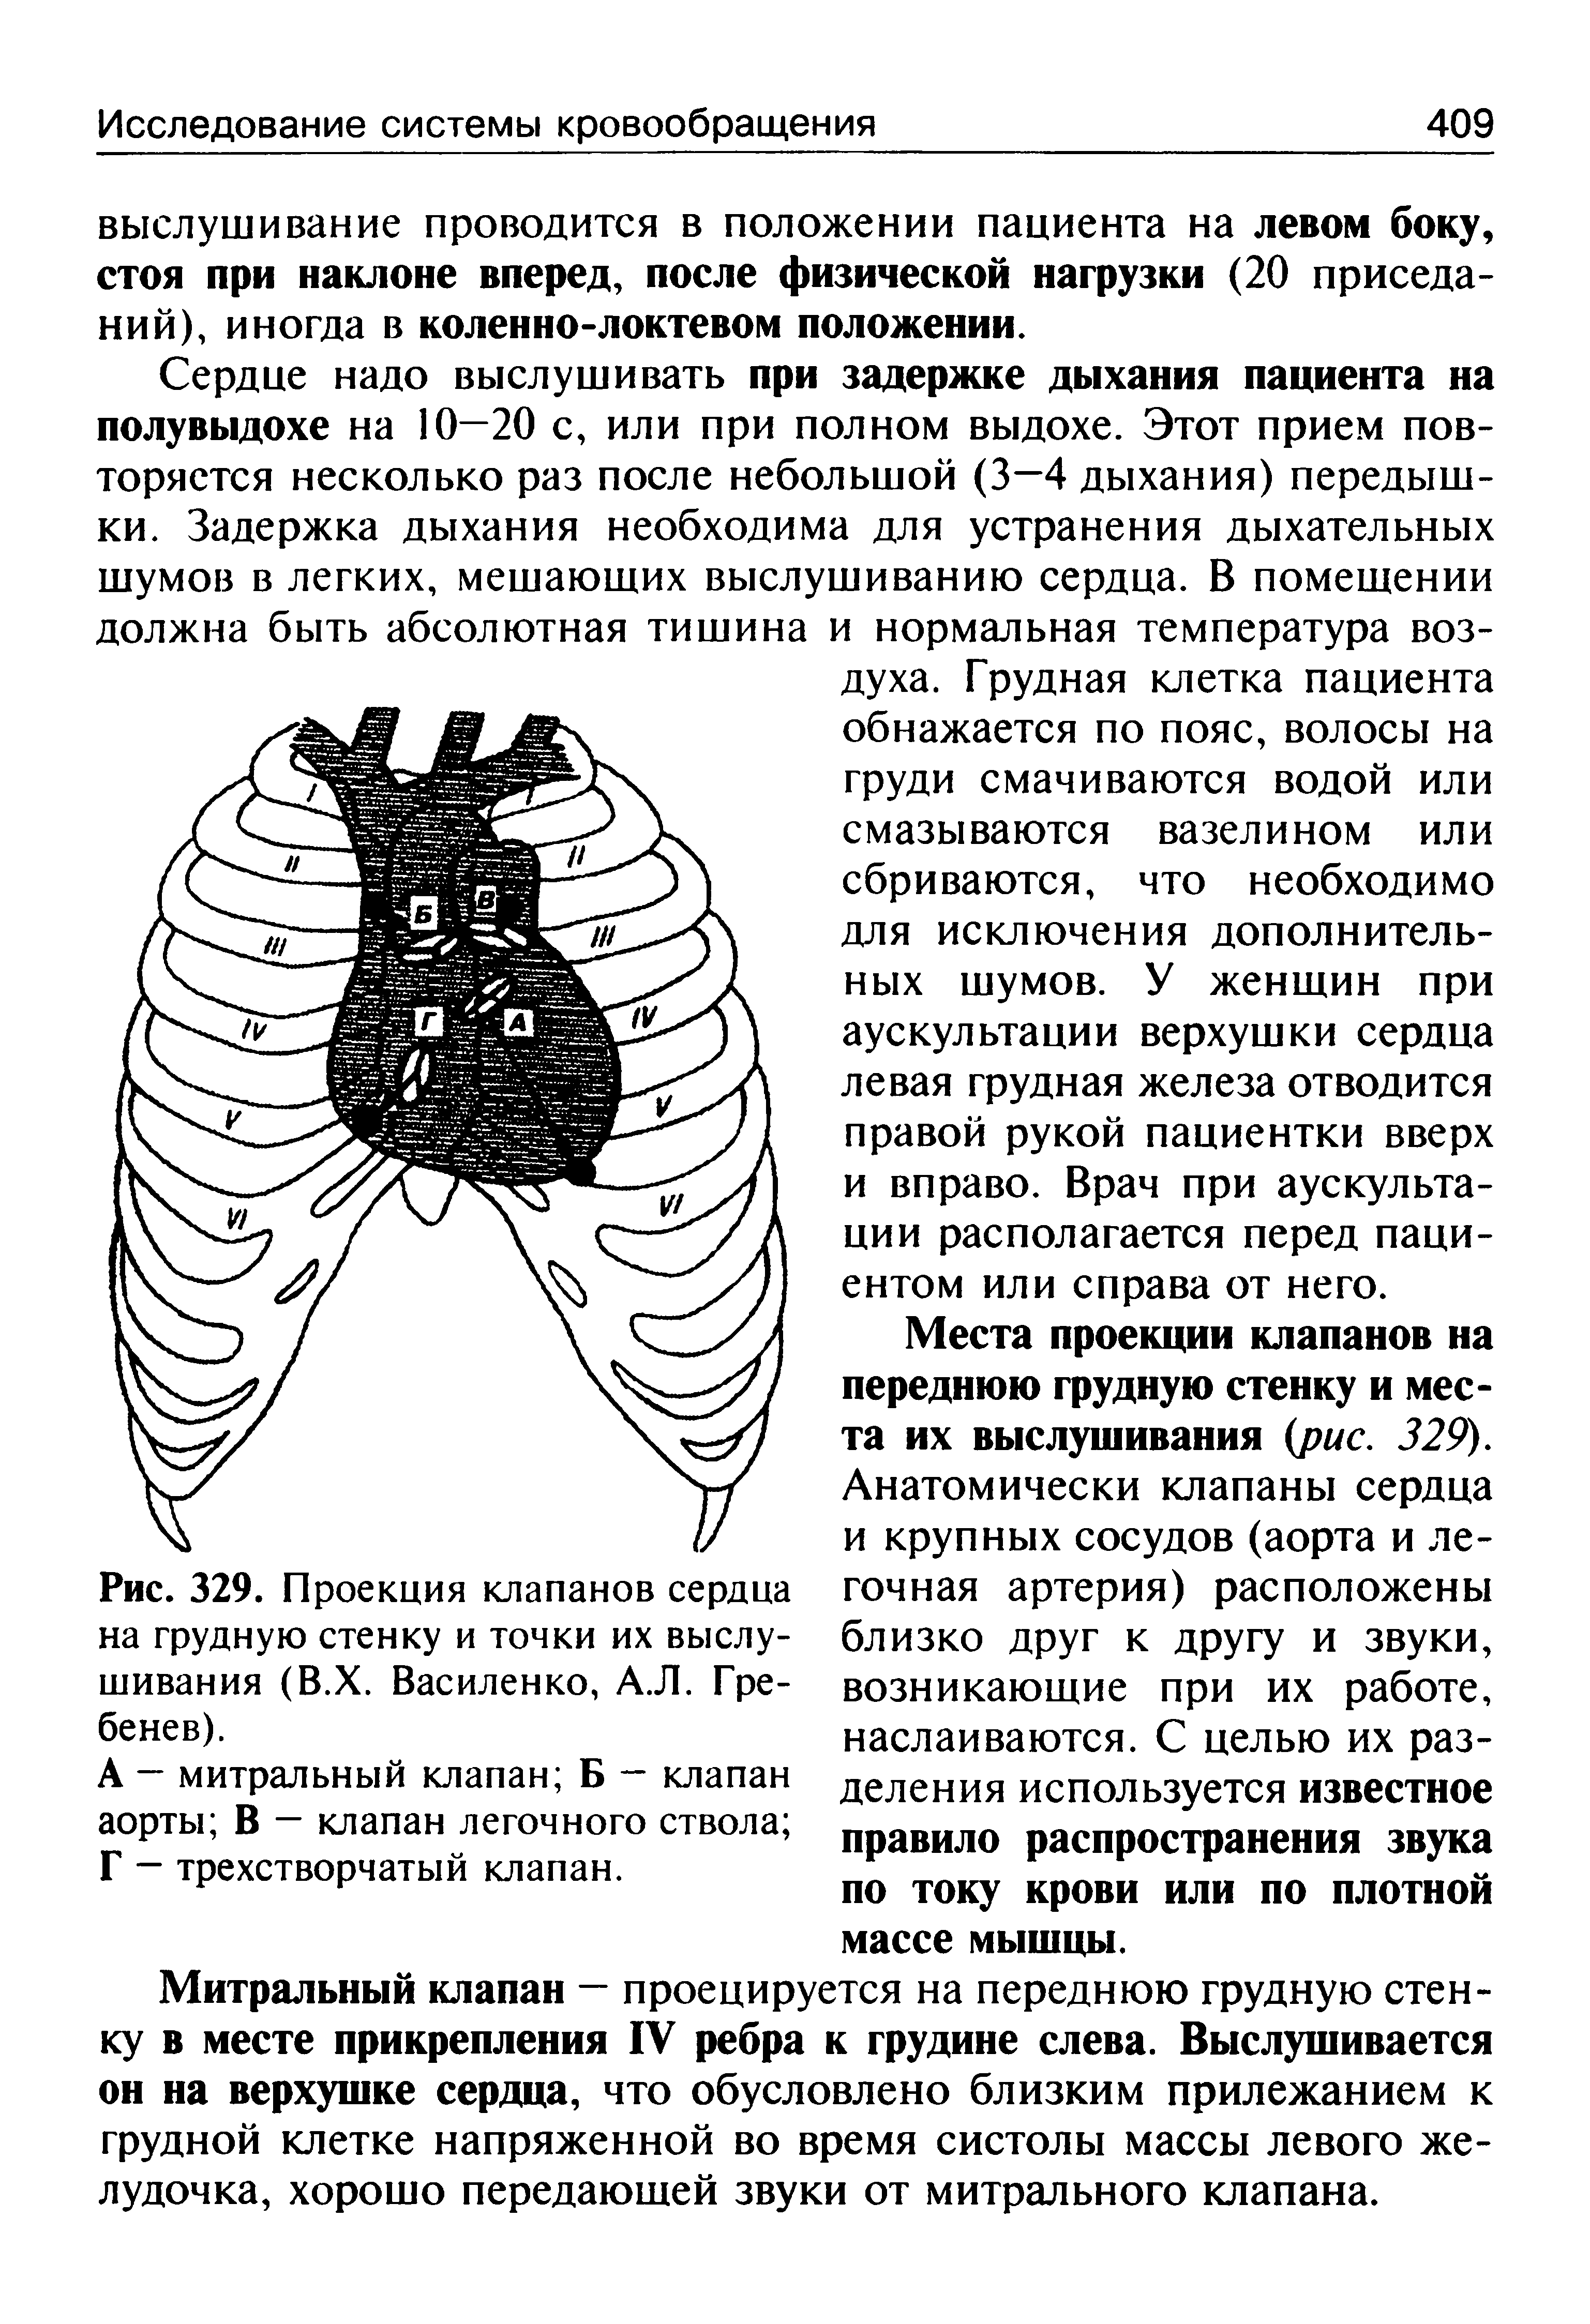 Рис. 329. Проекция клапанов сердца на грудную стенку и точки их выслушивания (В.Х. Василенко, А.Л. Гребенев).